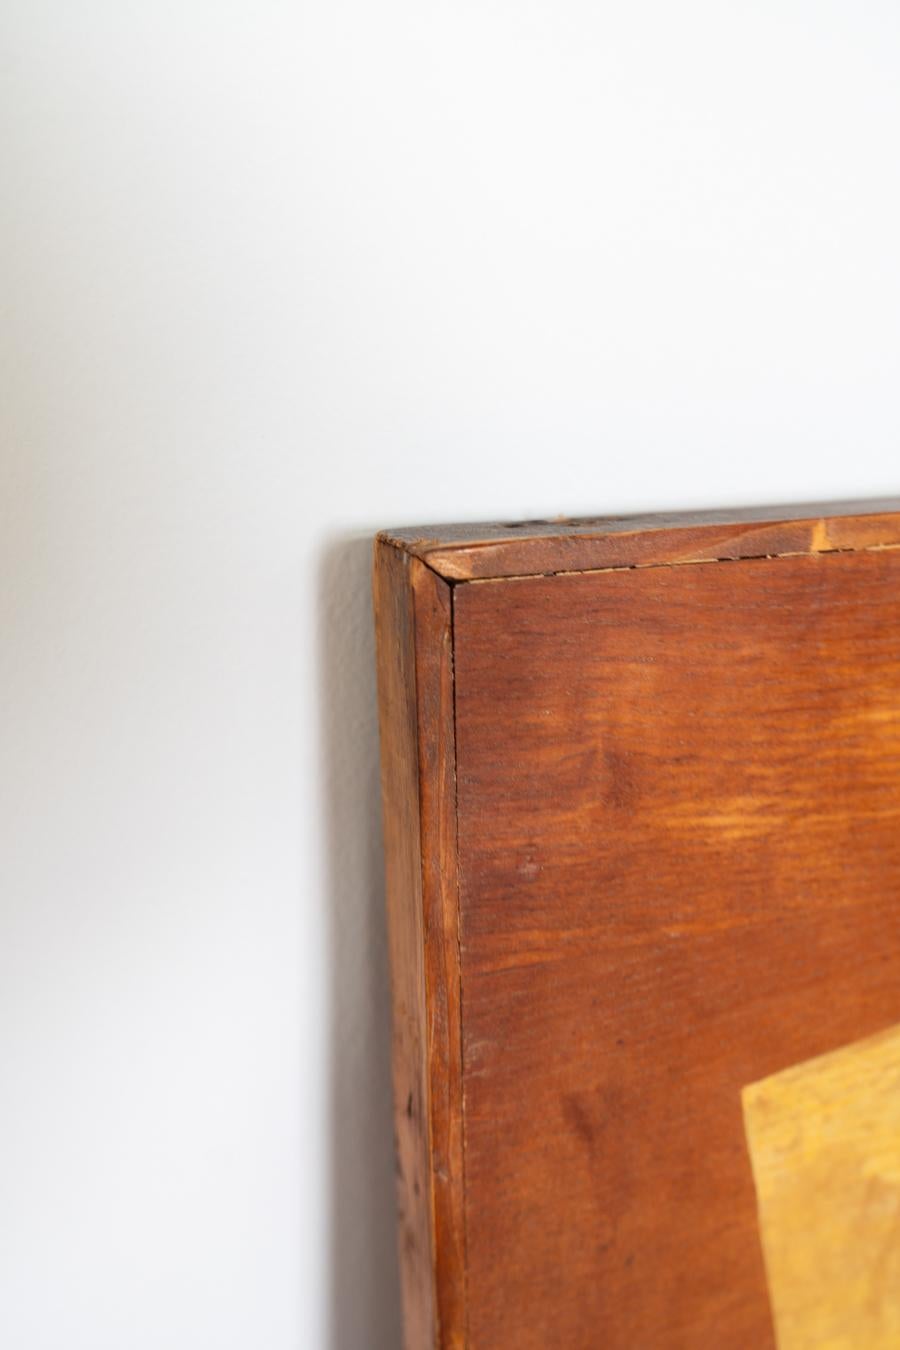 Quadro Menossi, Carnevale Napoletano 1970-1980
Dipinto a mano, su legno. Il legno col tempo si è leggermente curvato. In alcuni punti il 	colore è mancante, dovuto l'età. 

Stile Vintage
Periodo del design 1970 - 1979
Periodo di produzione Ignoto,